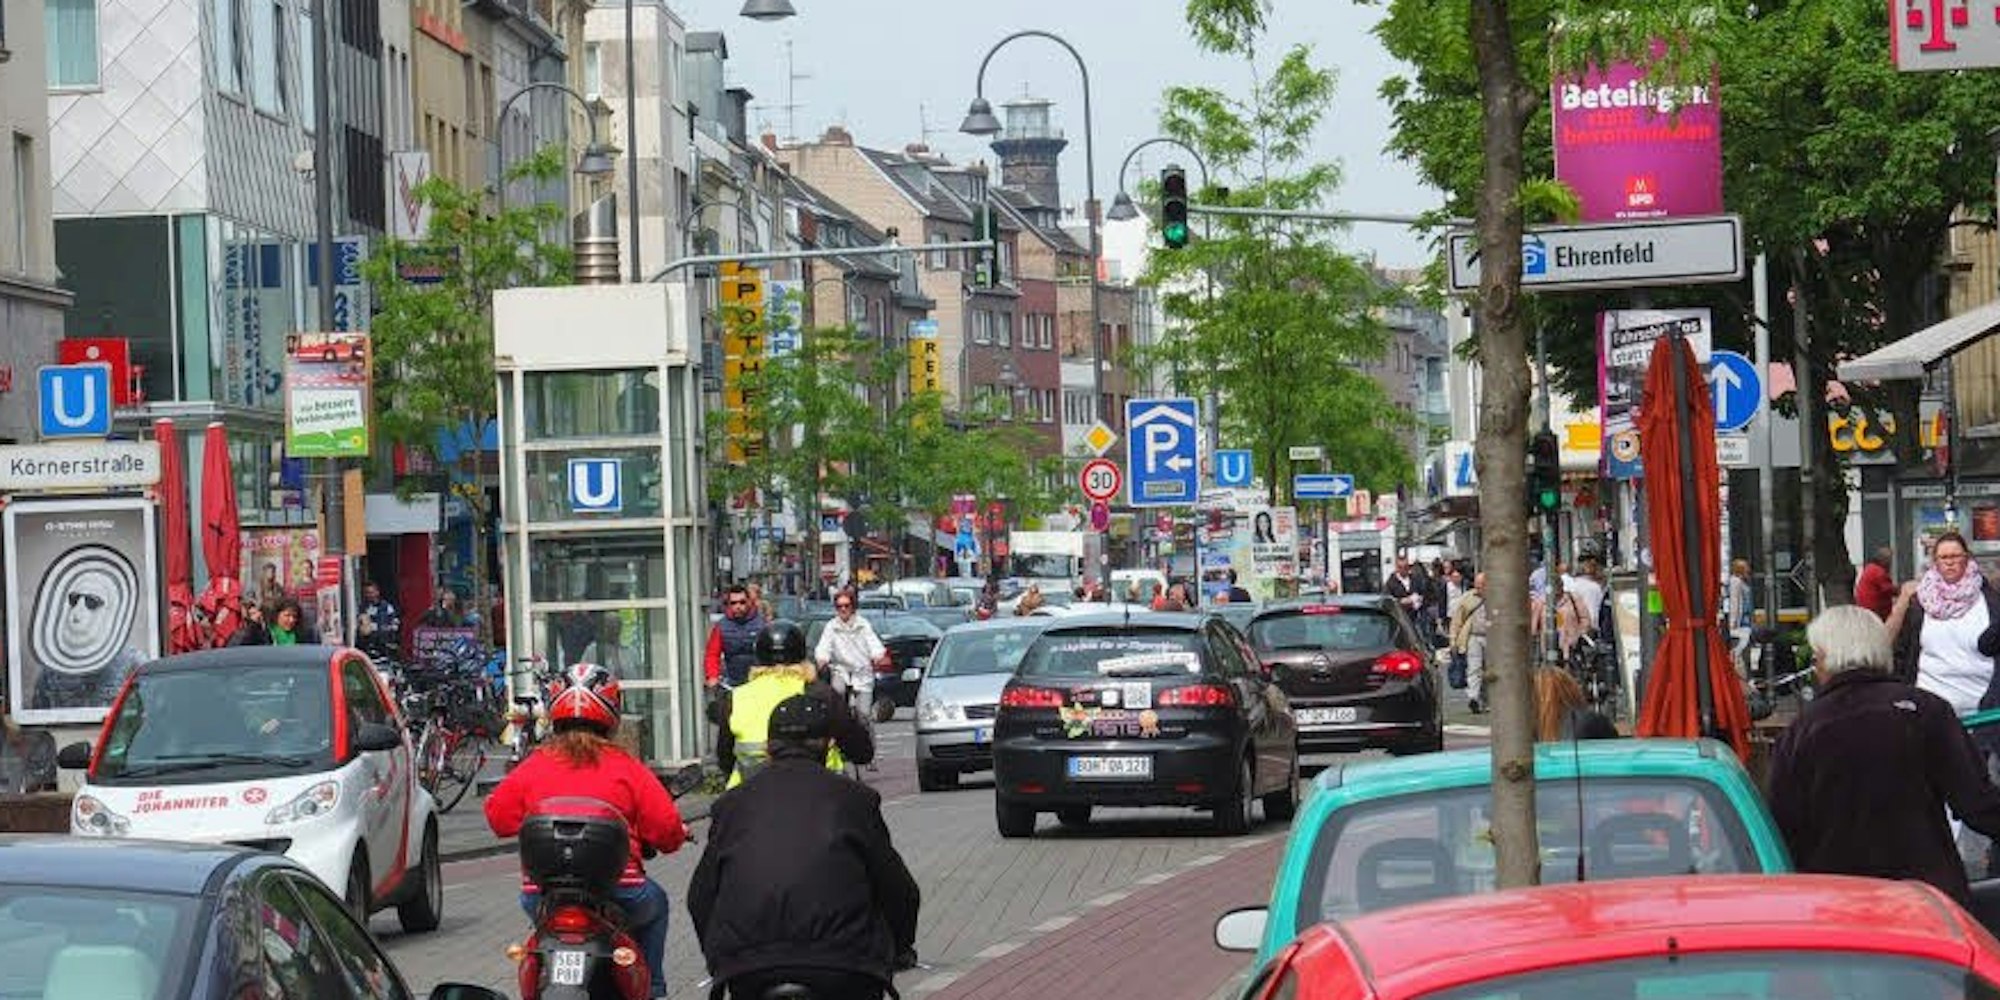 Die Venloer Straße spielt als Verkehrsader und als Geschäftszentrum in Ehrenfeld die Hauptrolle.